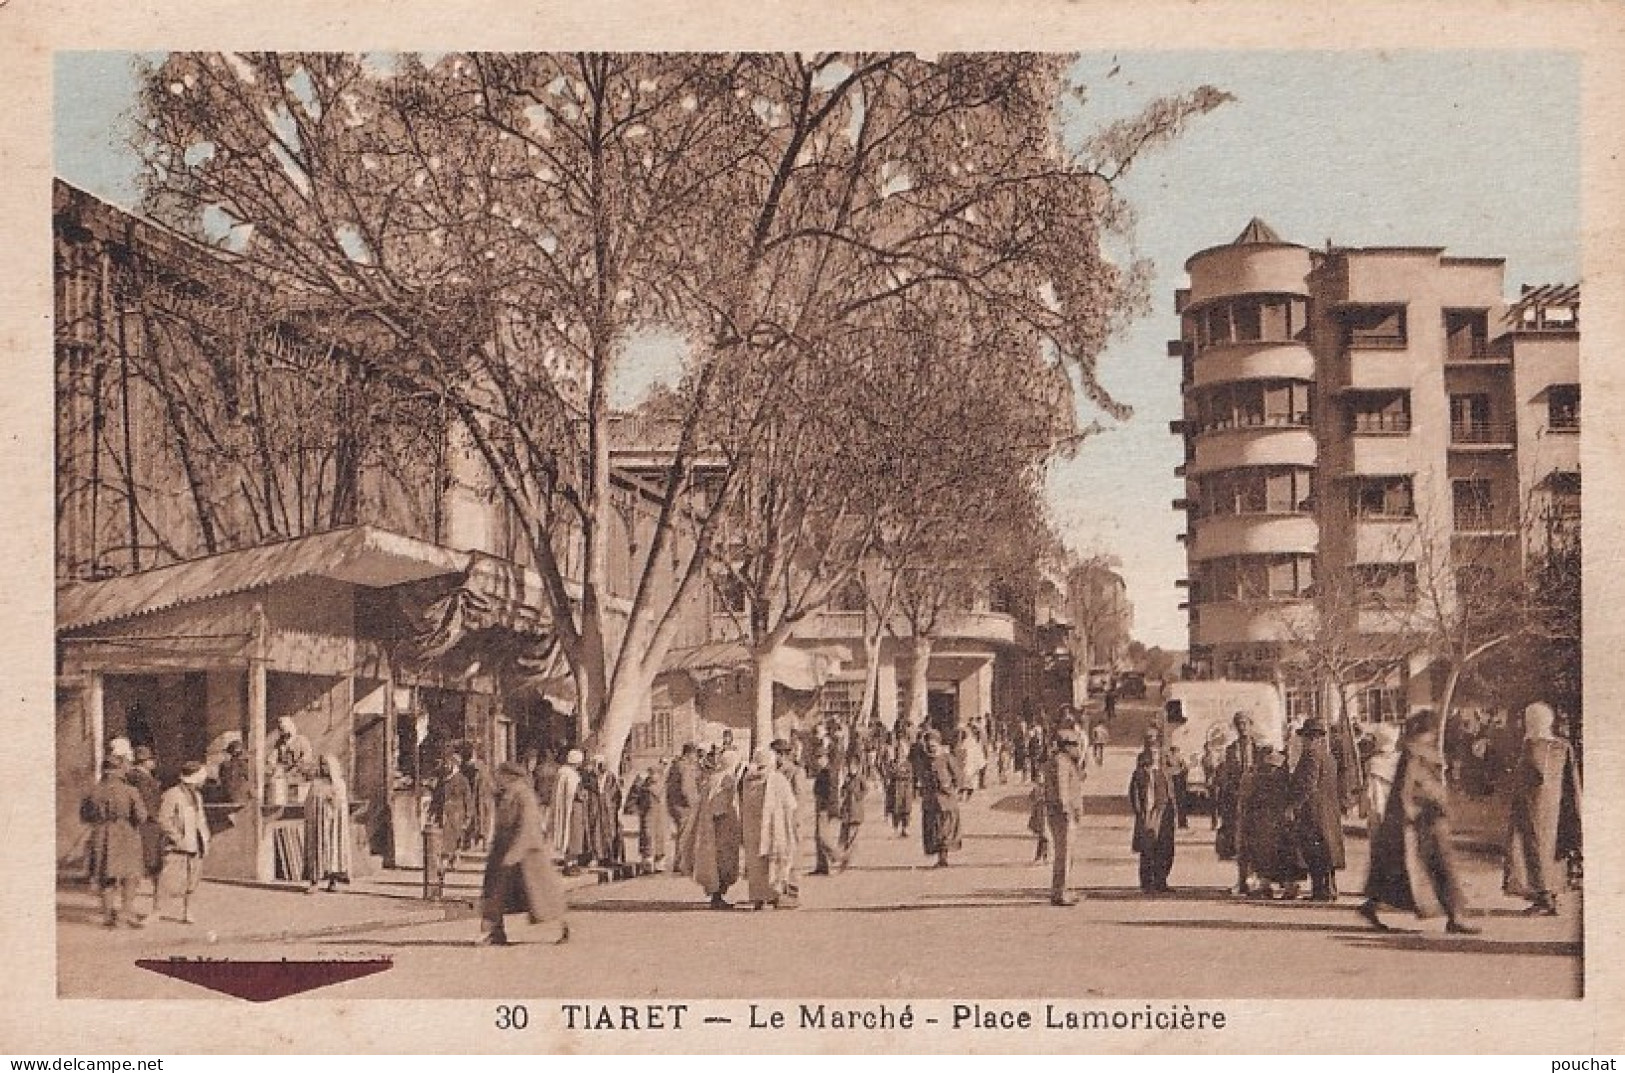  C9- TIARET (ALGERIE)  LE MARCHE - PLACE LAMORICIERE - ( ANIMEE - HABITANTS - 2 SCANS ) - Tiaret